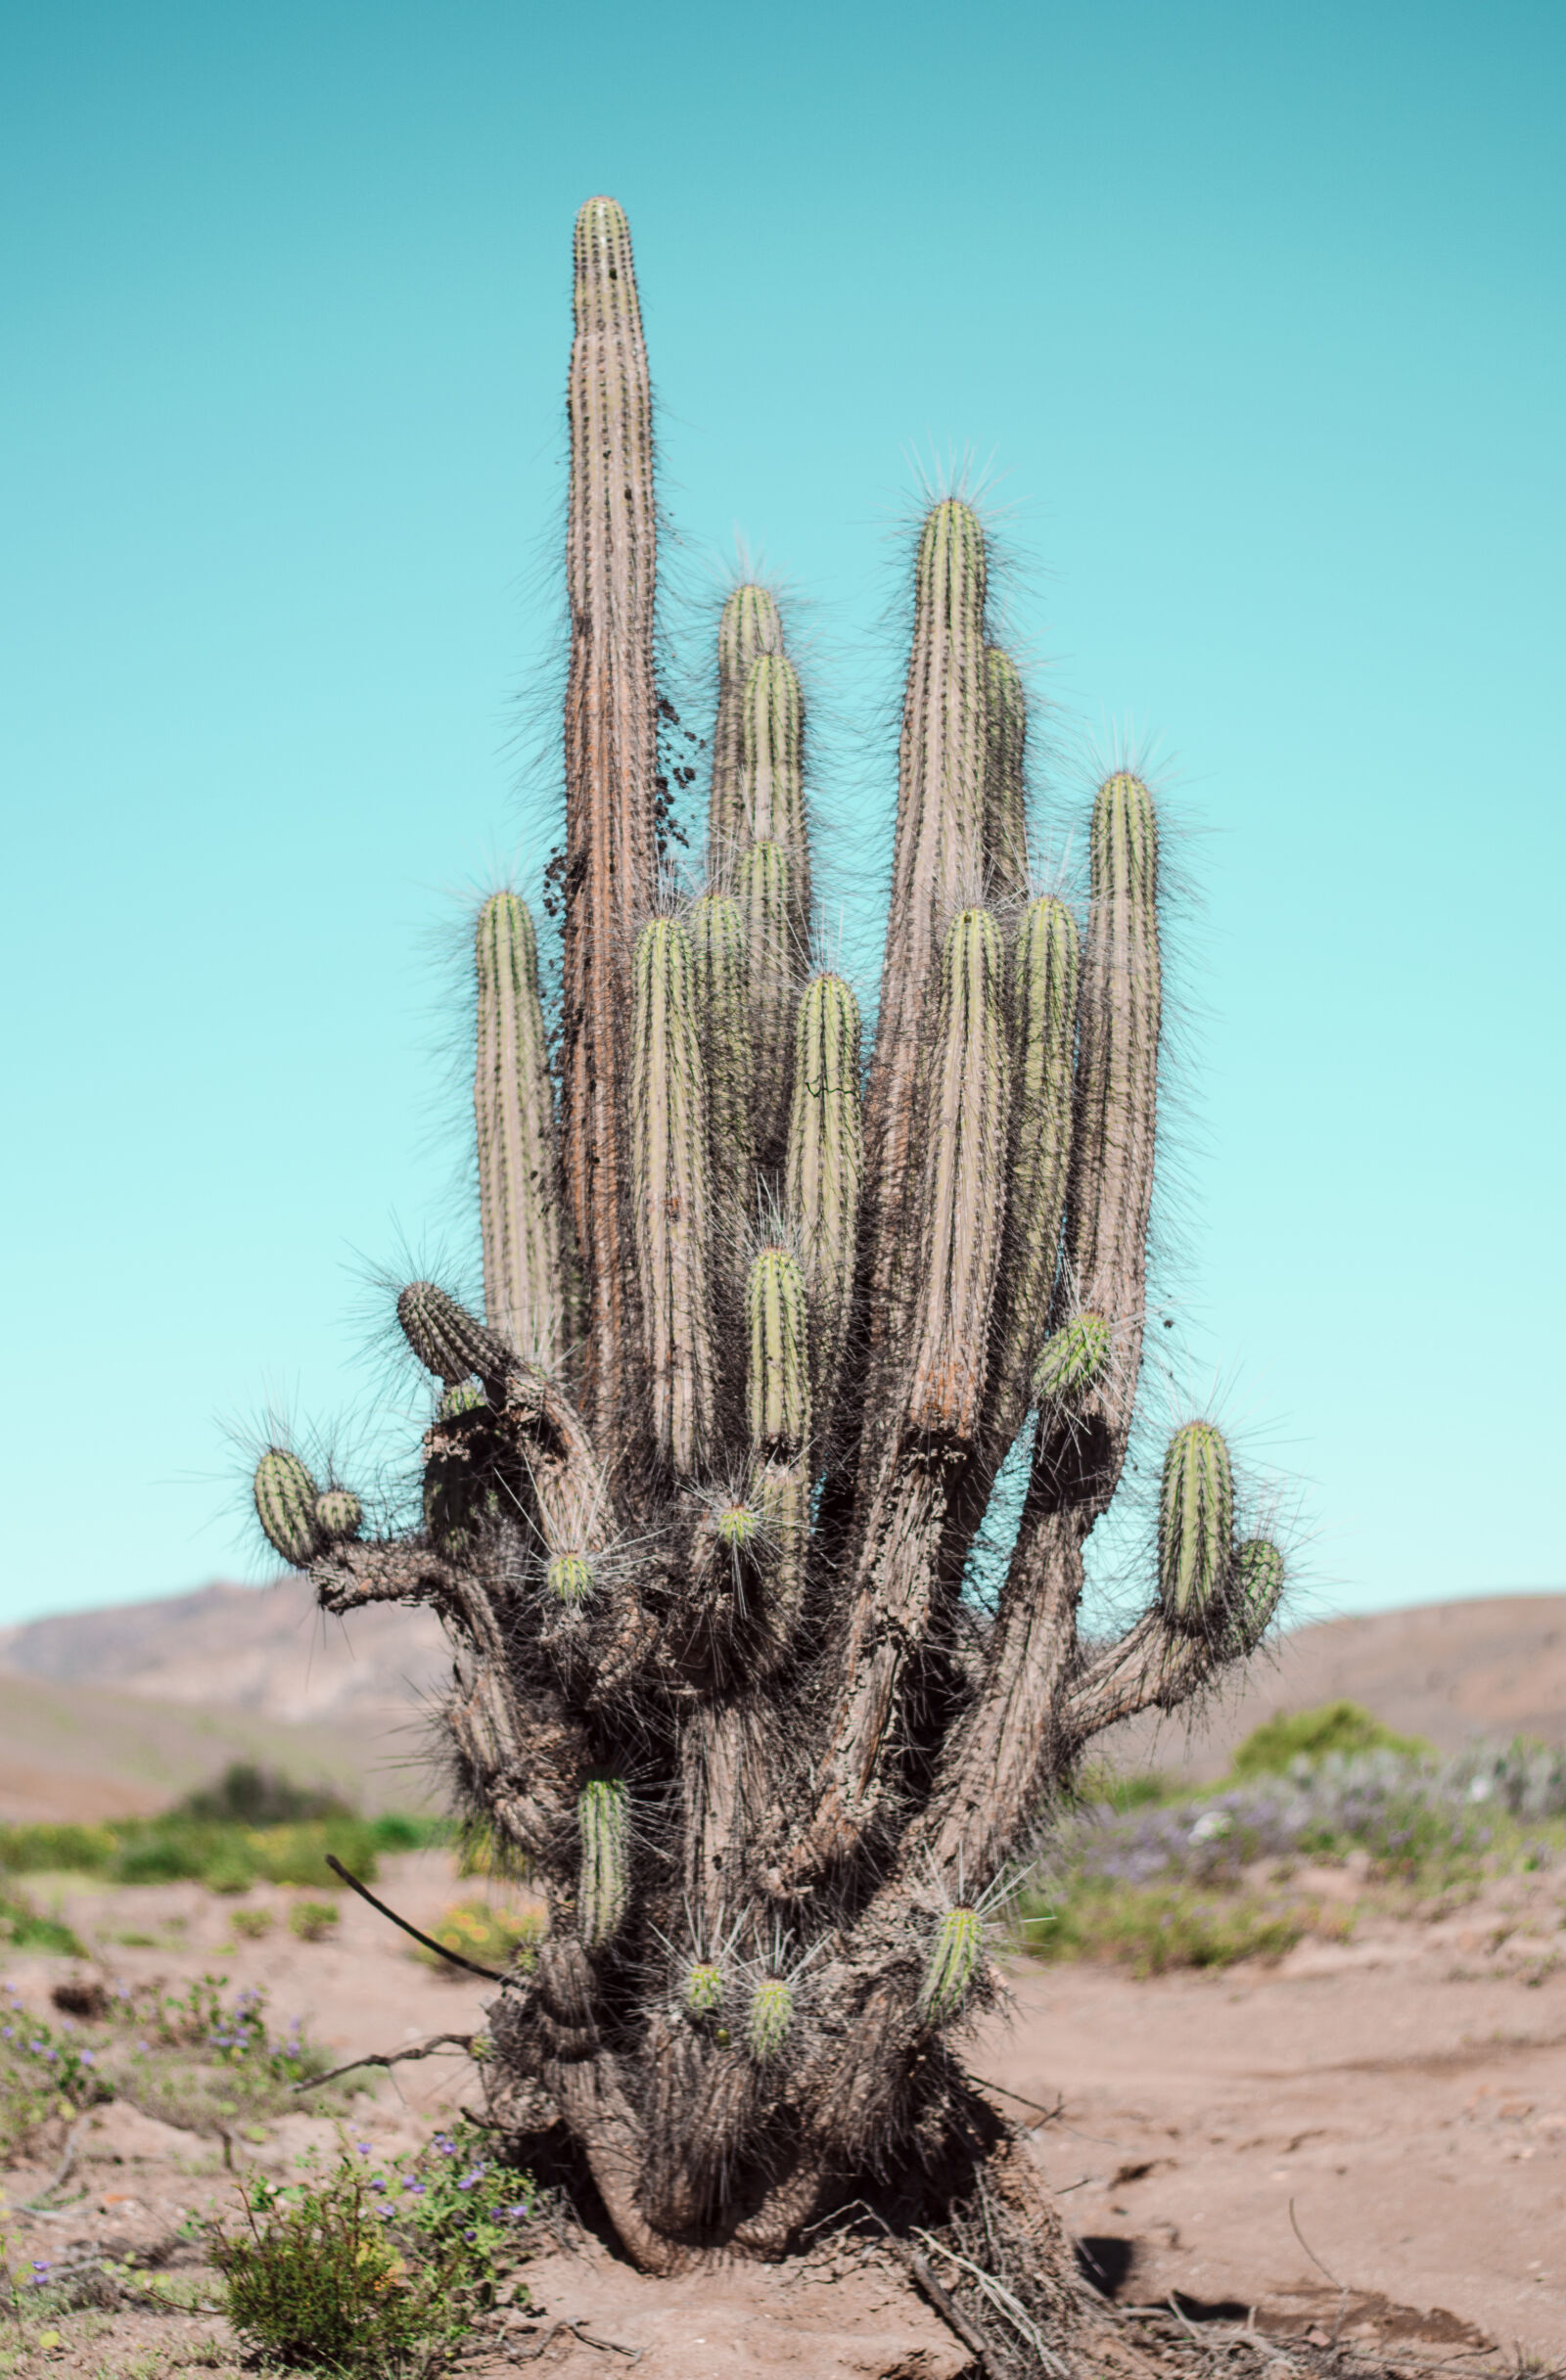 Nikon D5100 + Nikon AF-S Nikkor 50mm F1.8G sample photo. Cactus, chile, desert, landscape photography